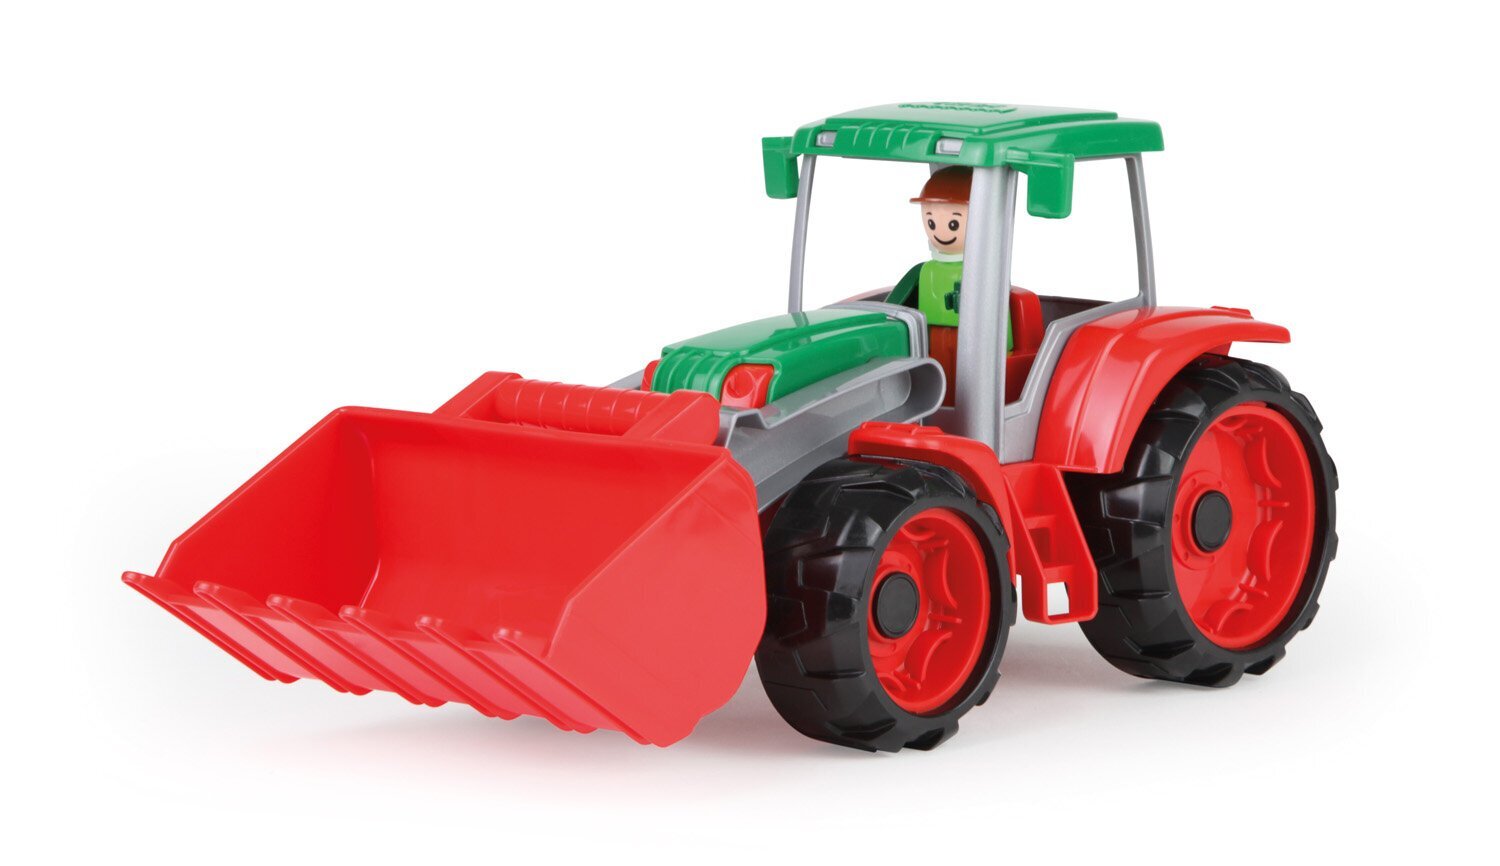 Traktor Lena Truxx 33 cm hind ja info | Imikute mänguasjad | kaup24.ee